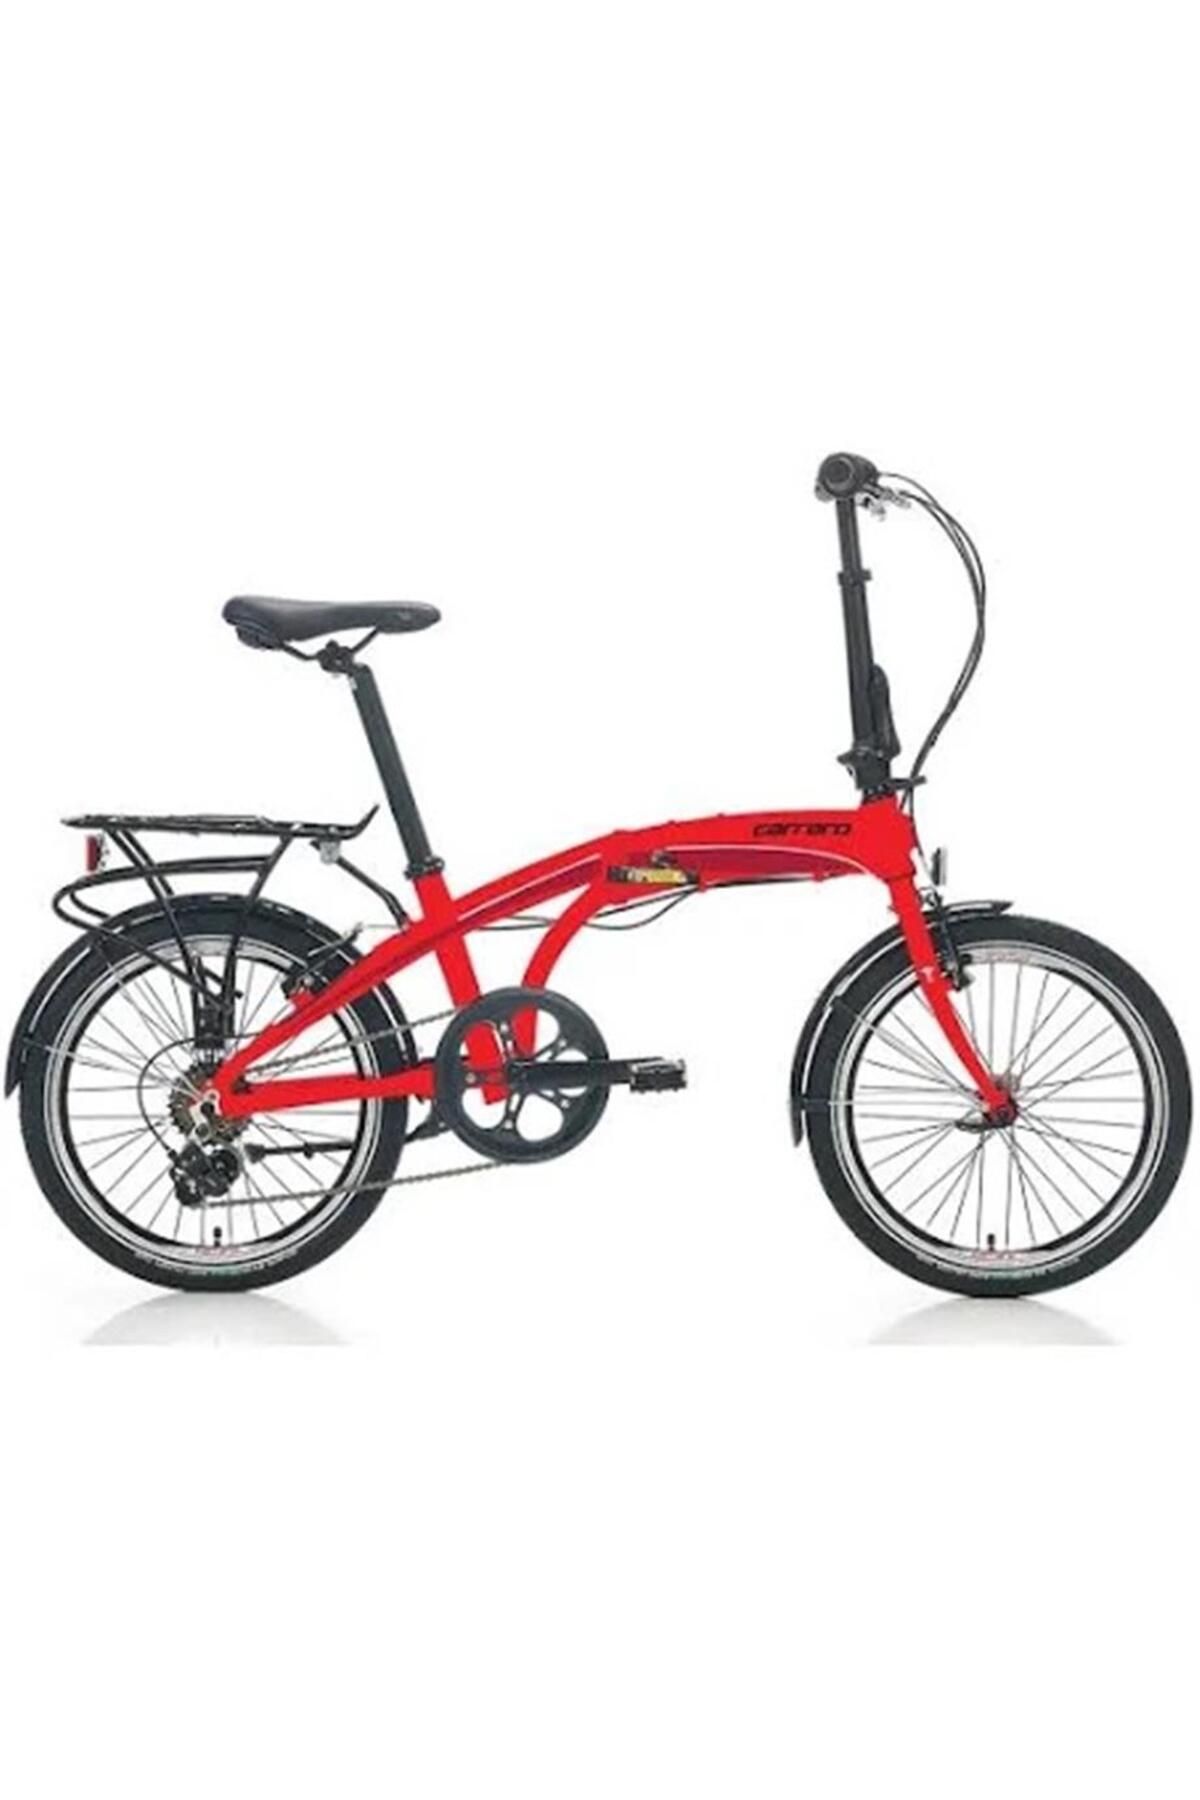 Carraro Flexı 106 Katlanır Bisiklet 320h V 20 Jant 6 Vites Kırmızı-siyah-beyaz